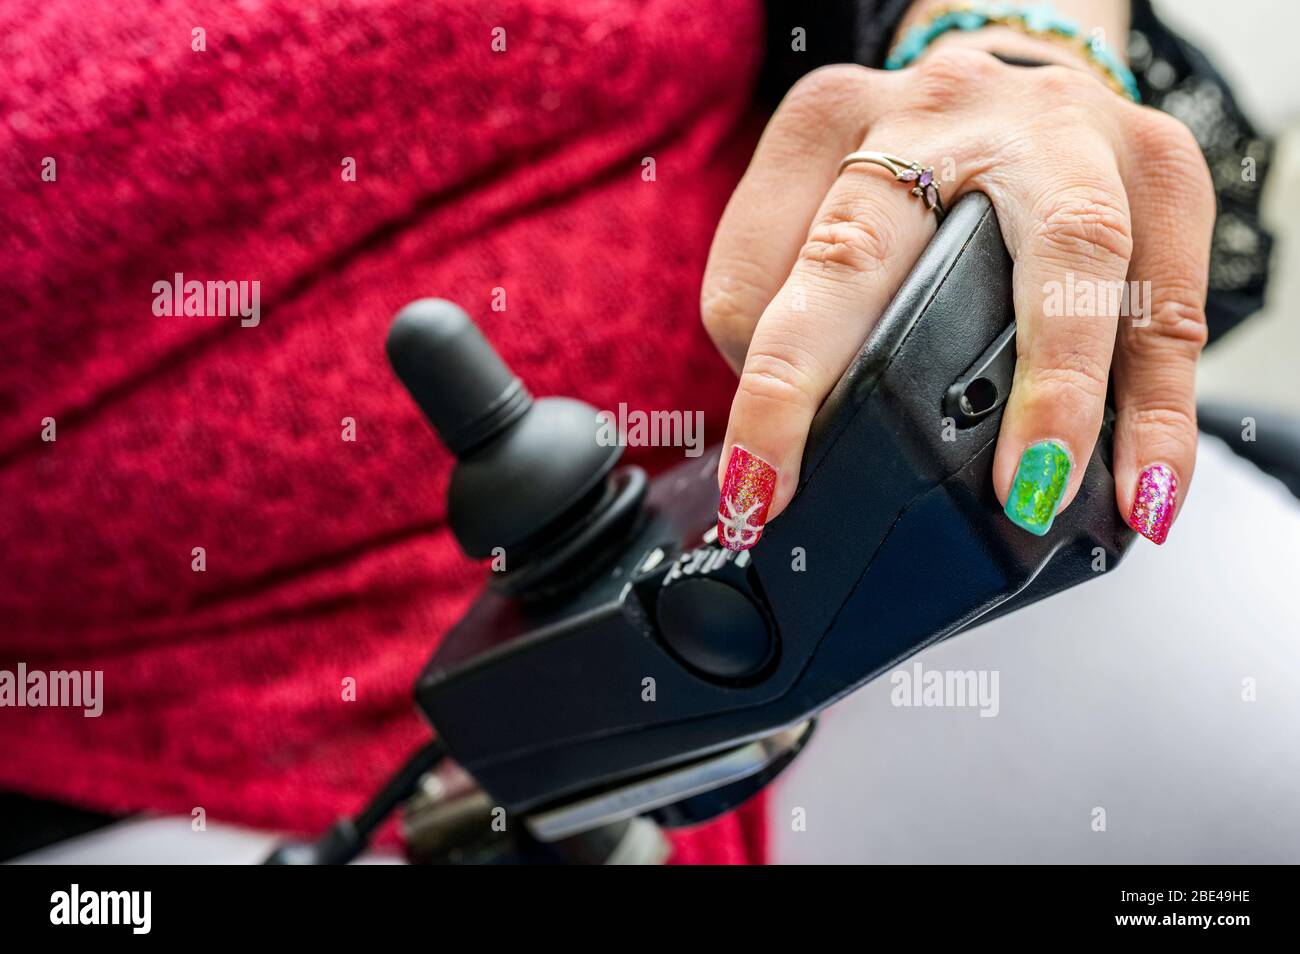 Maori Frau mit Zerebralparese in einem elektrischen Rollstuhl mit Joystick und Controller, Fingernägel mit Nail Art; Wellington, Neuseeland Stockfoto